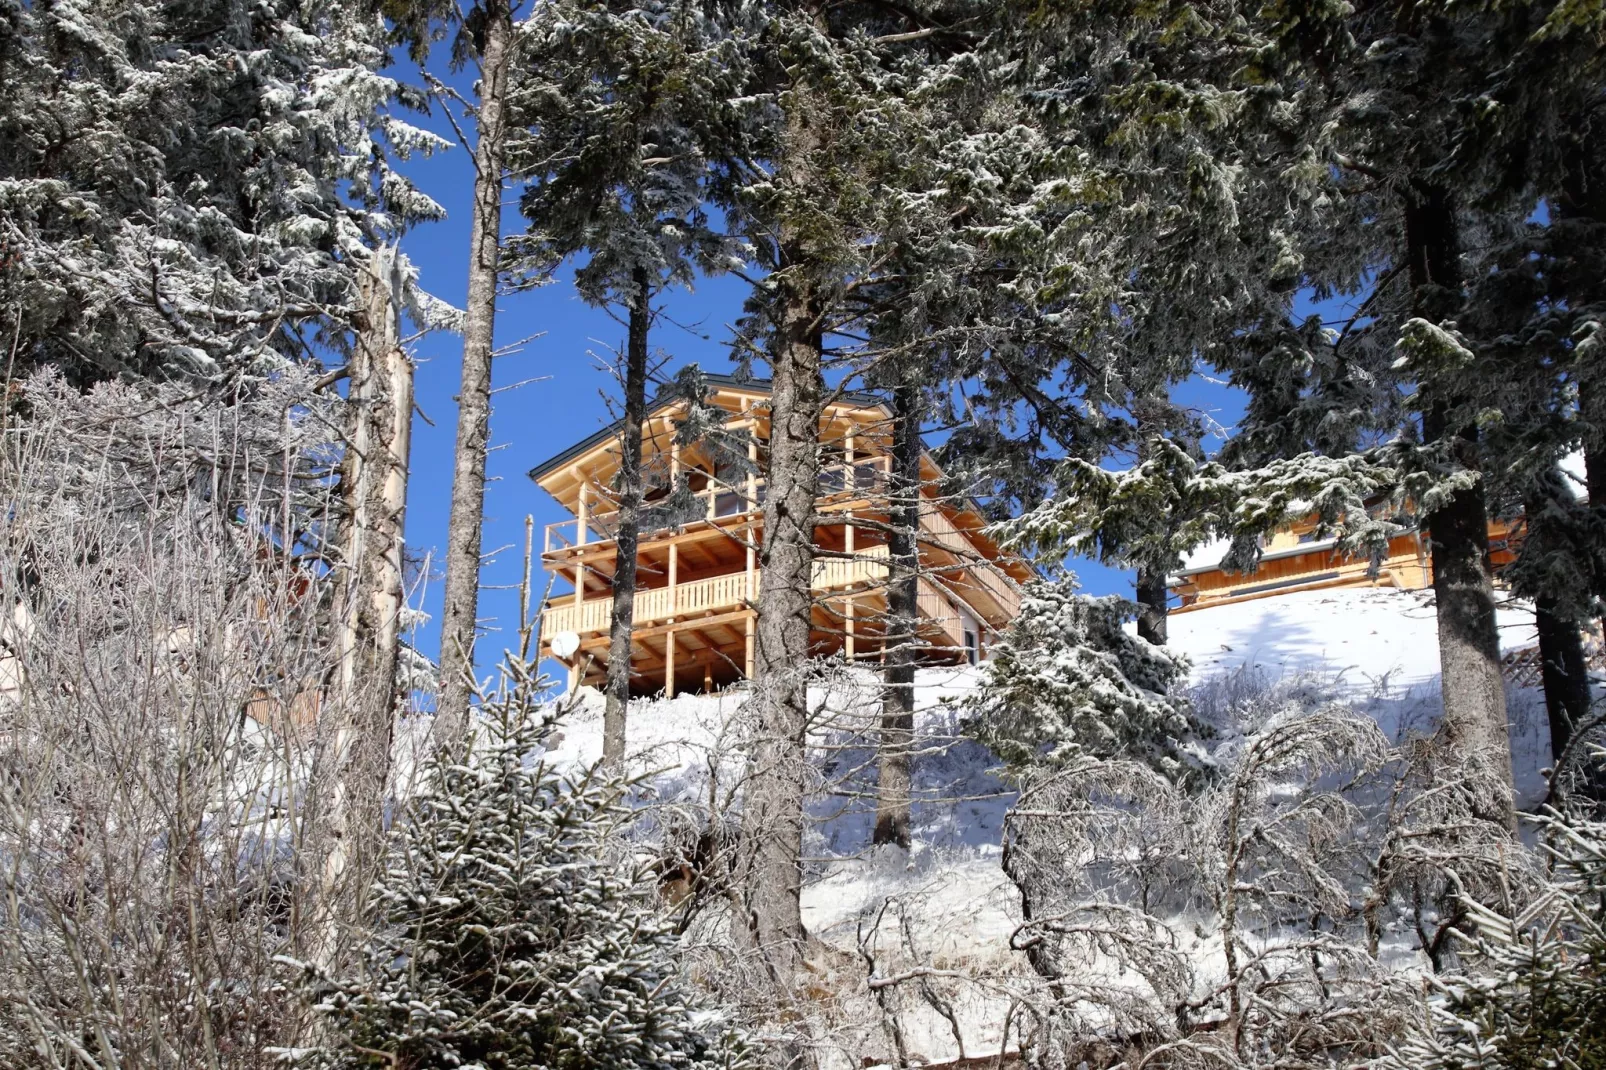 Alpina Lodge-Exterieur winter